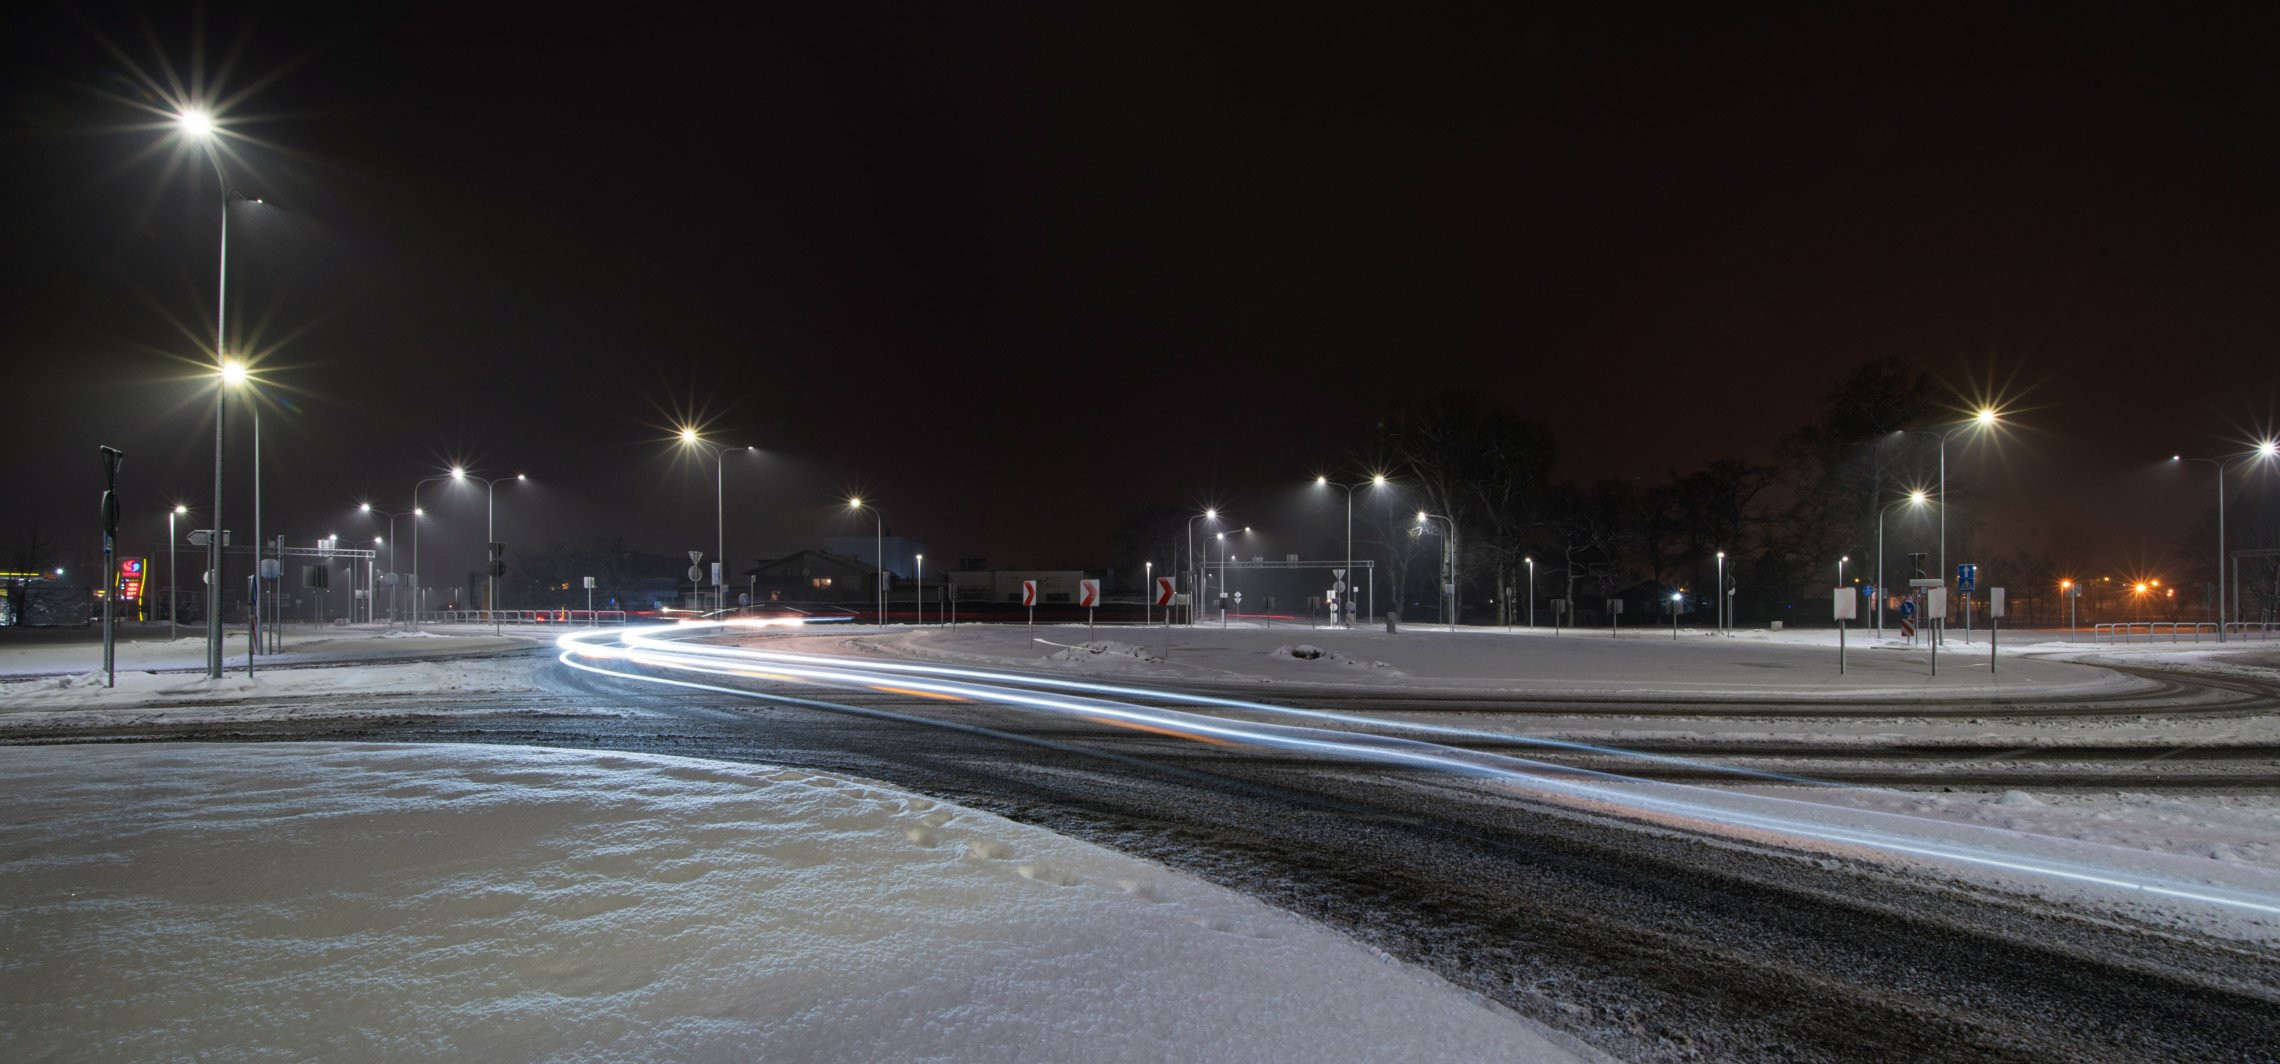 Inowrocław - Nowe rondo w śnieżnej scenerii